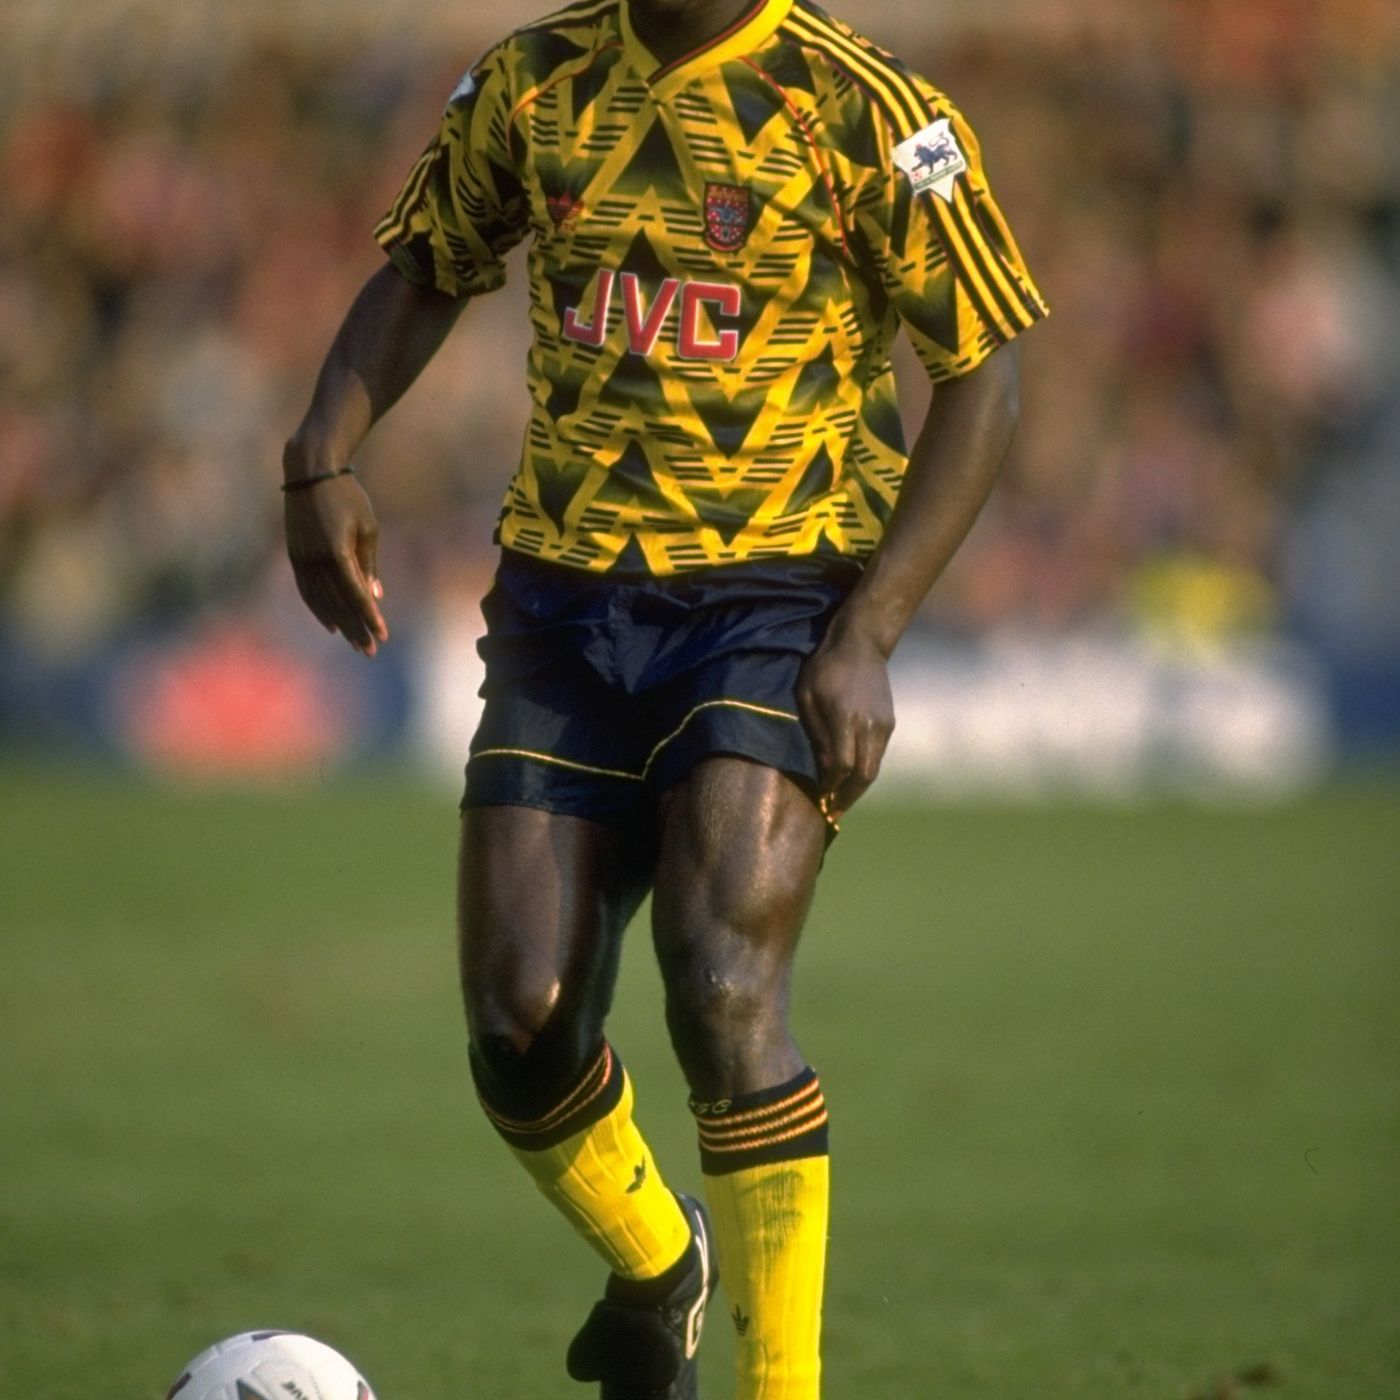 Arsenal 1991 1993 maillot de foot jaune inspiration 2020